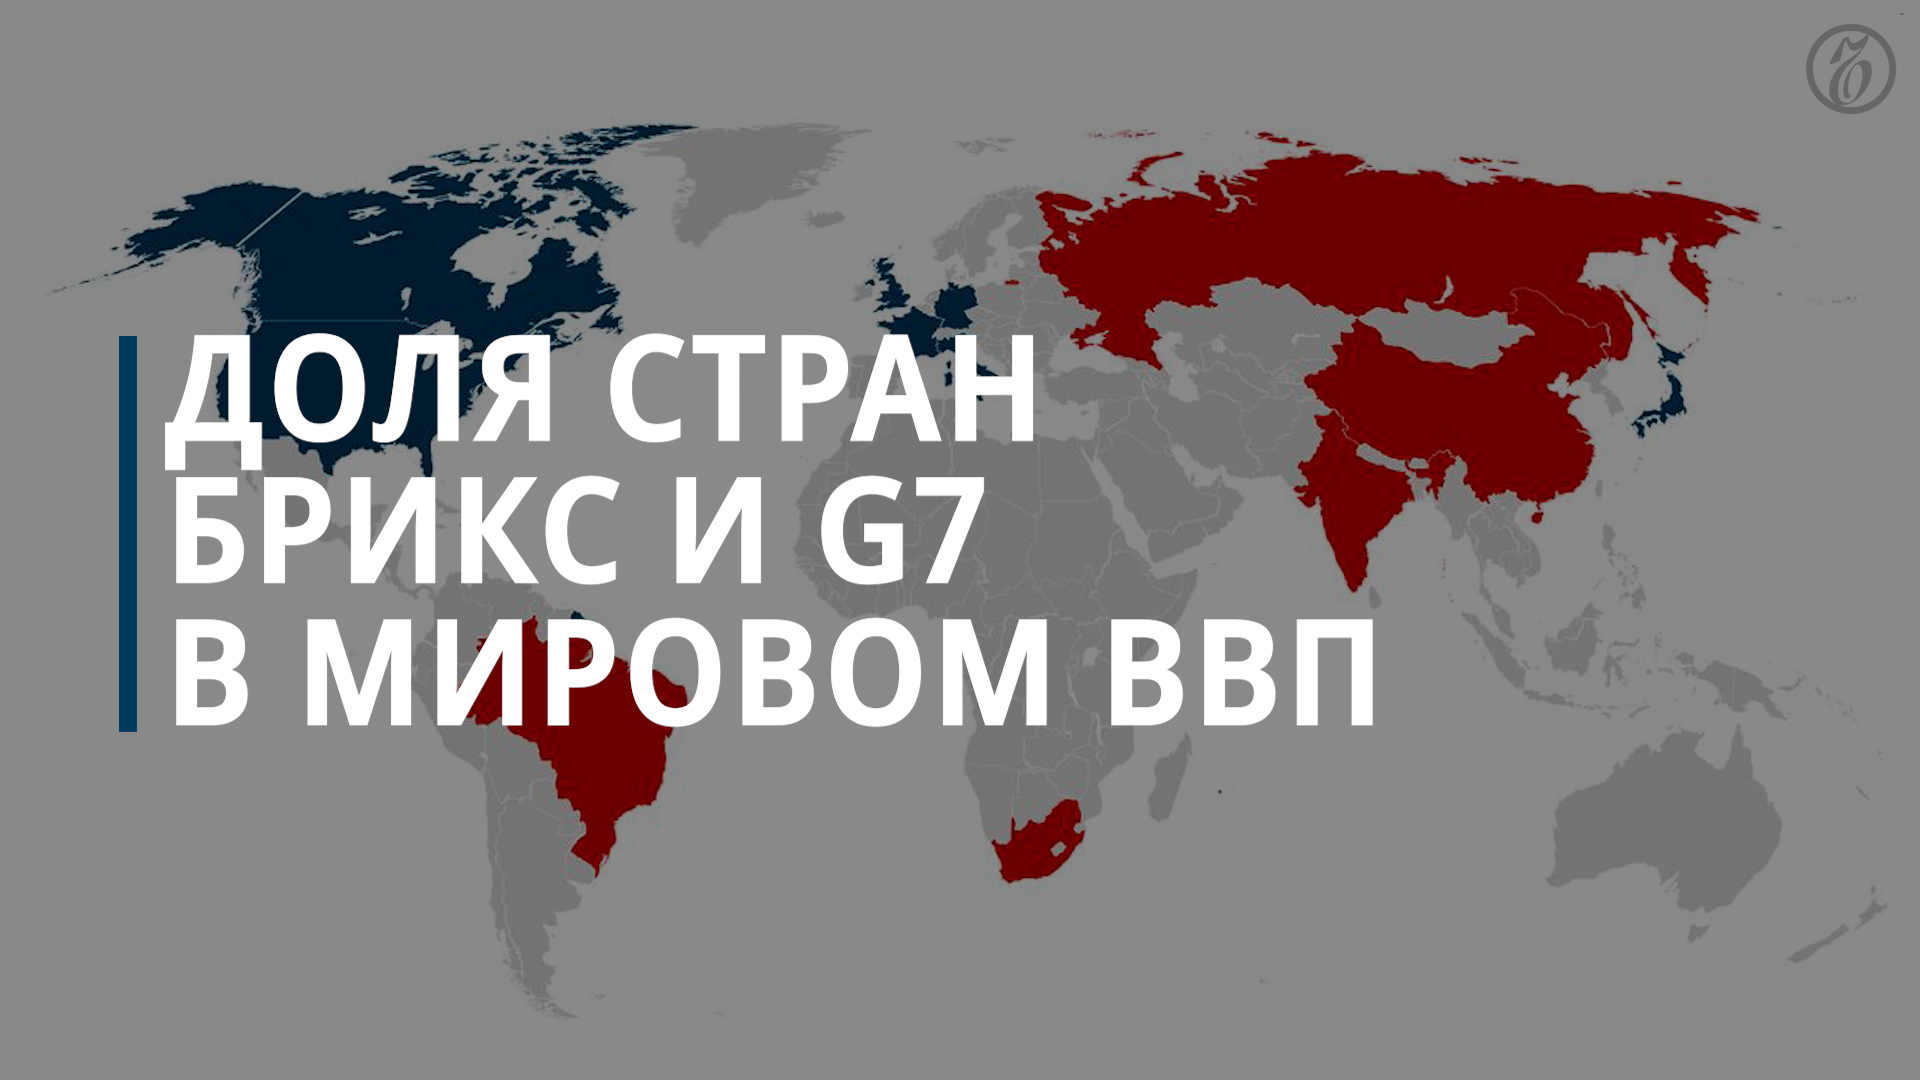 Доля стран БРИКС и G7 в мировом ВВП - Коммерсантъ